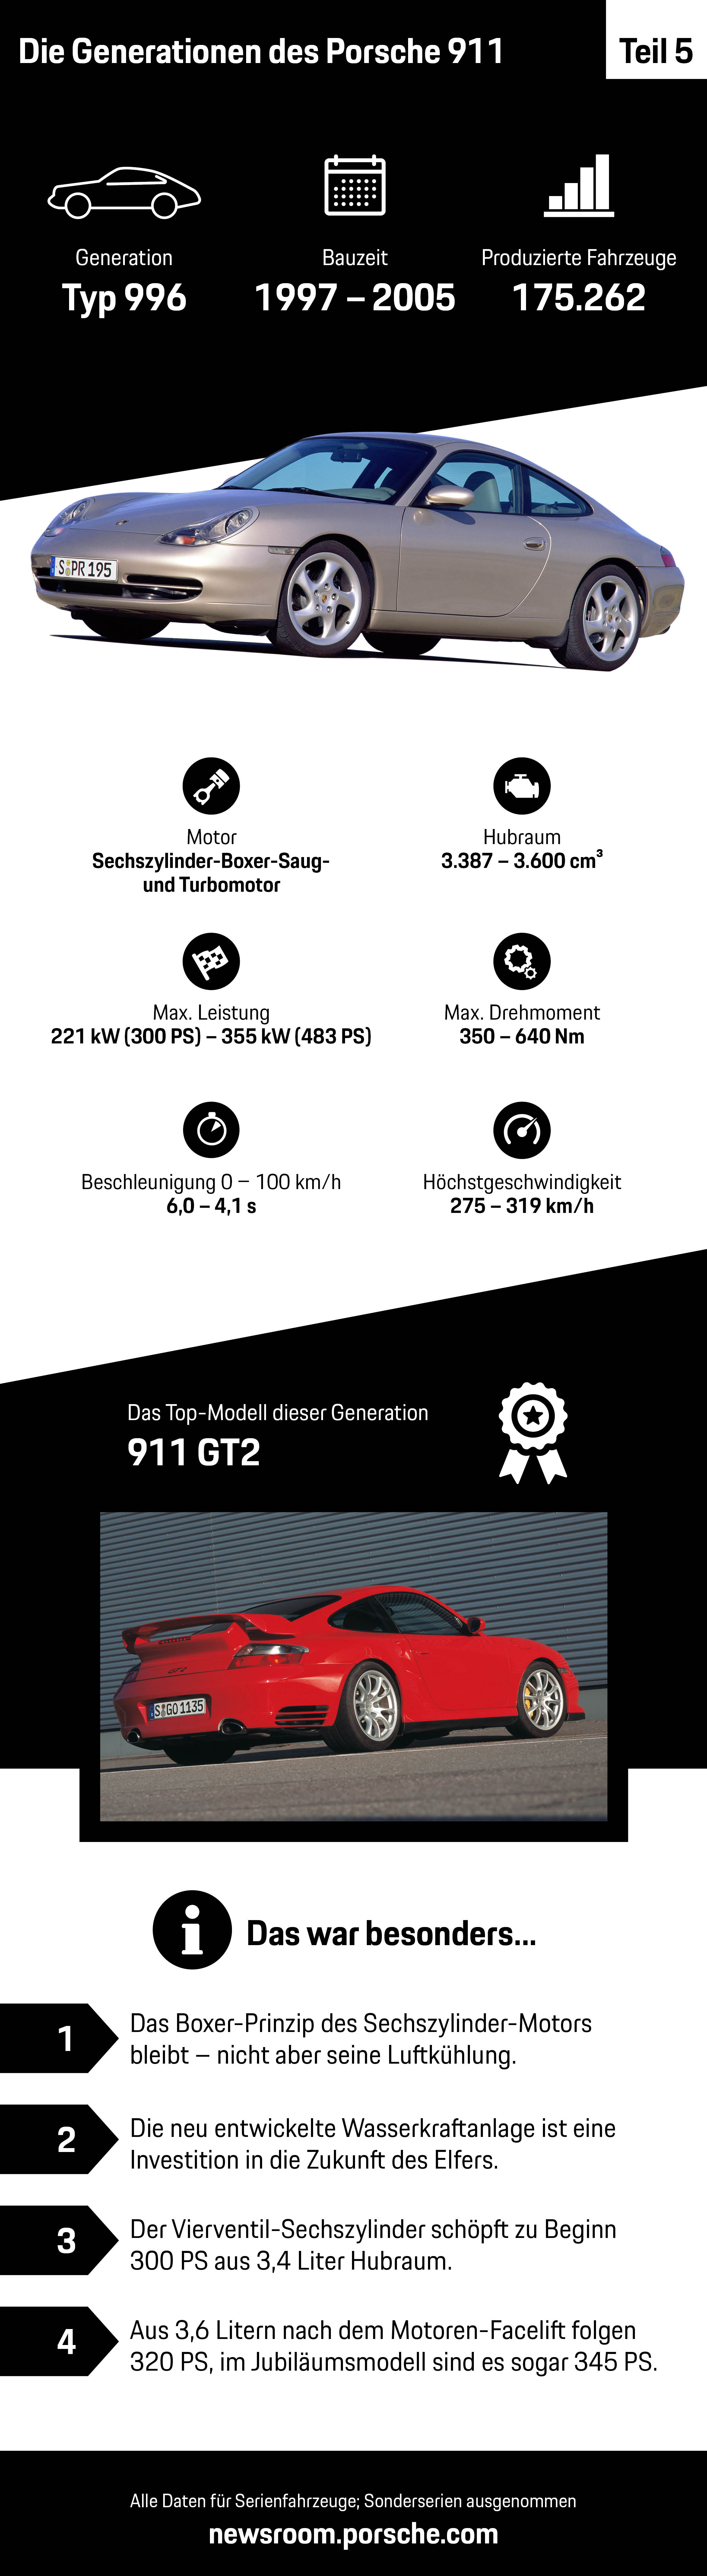 Die Generationen des Porsche 911 – Teil 5, Infografik, 2018, Porsche AG